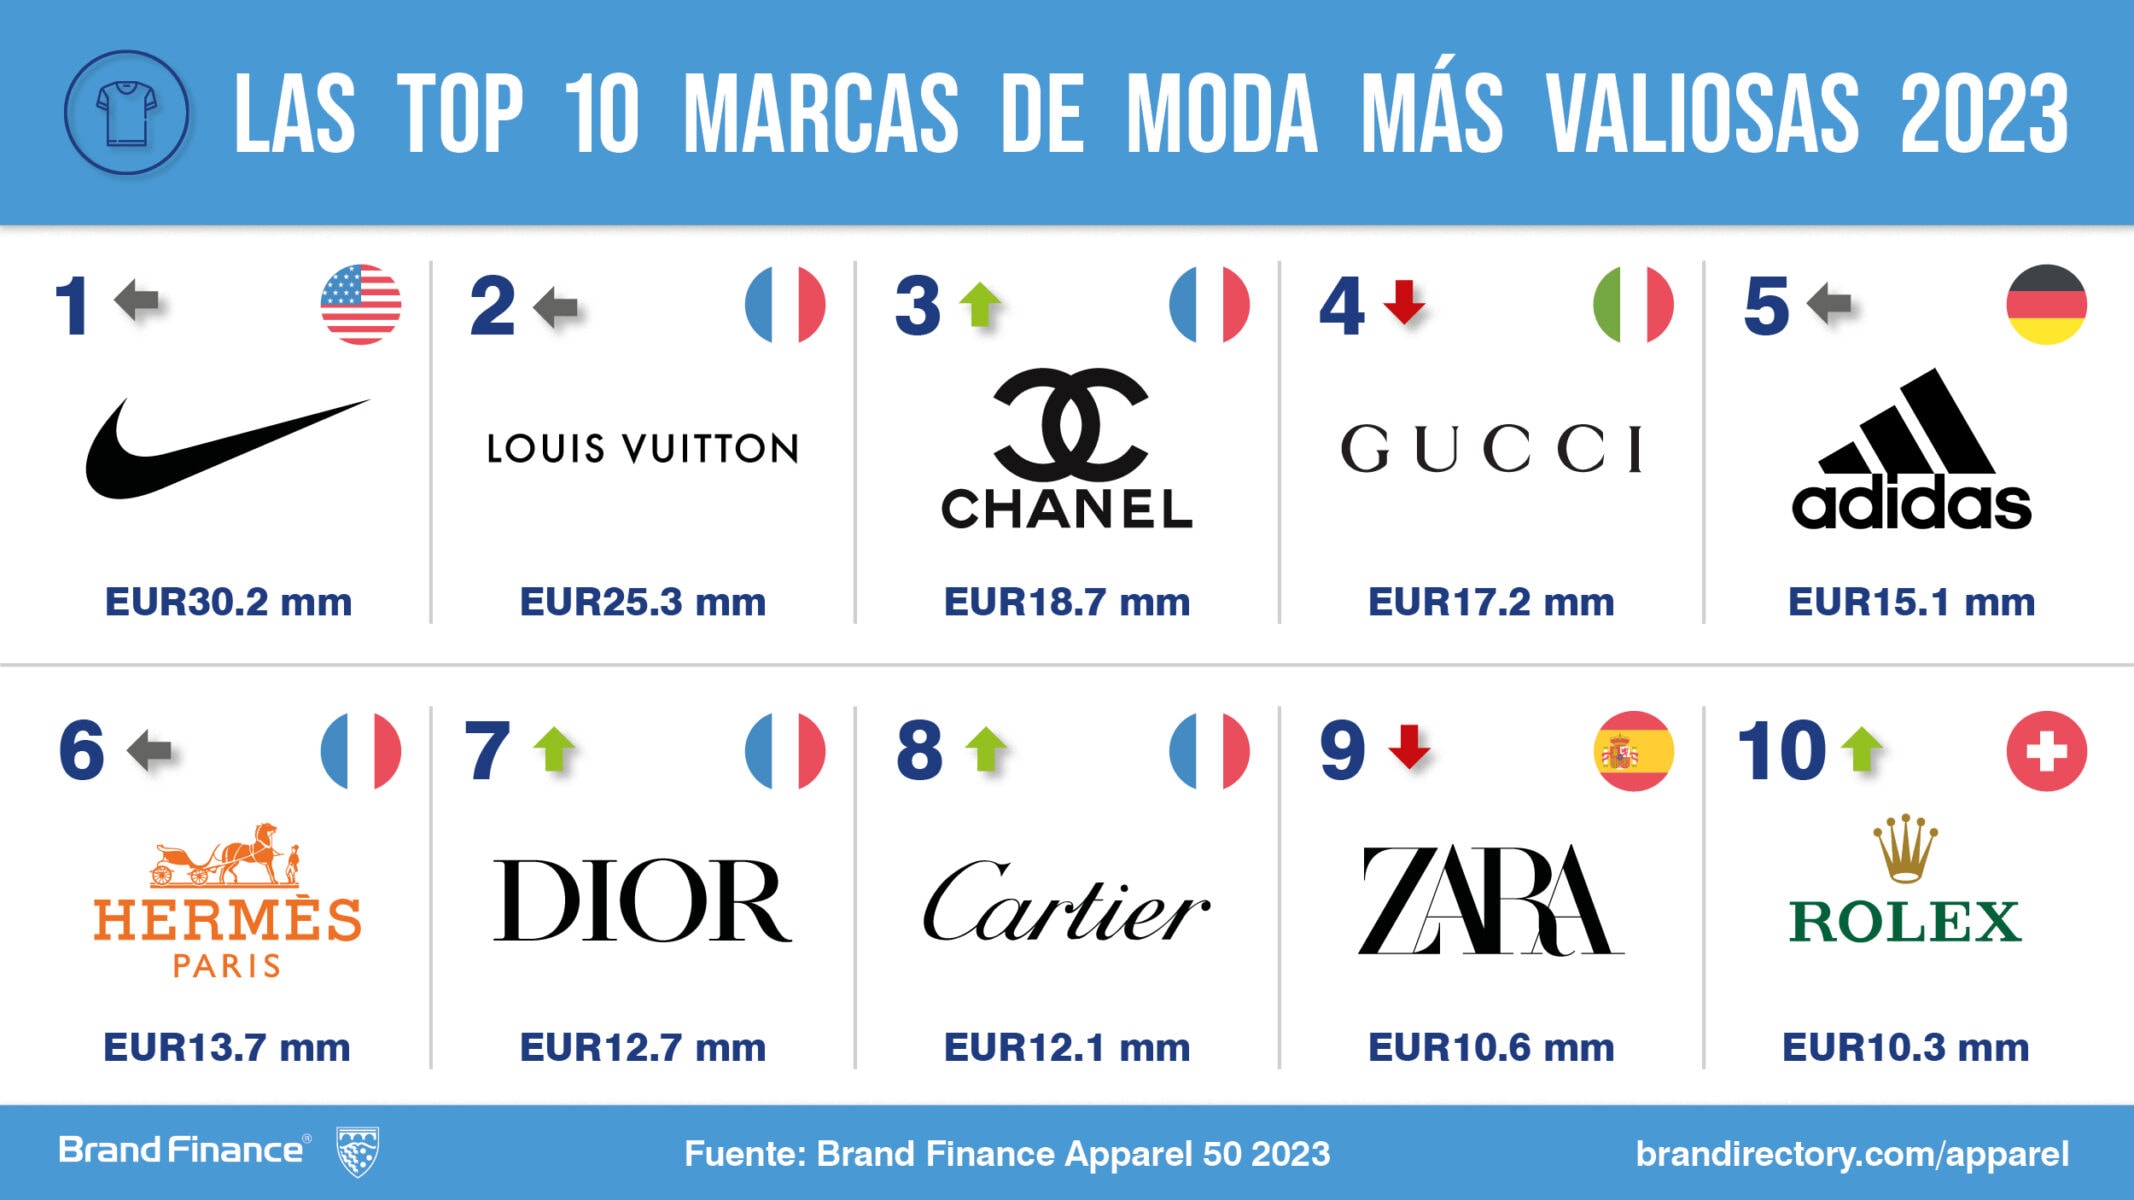 Zara y Loewe, las marcas españolas de moda más valiosas según Brand Finance, Press Release